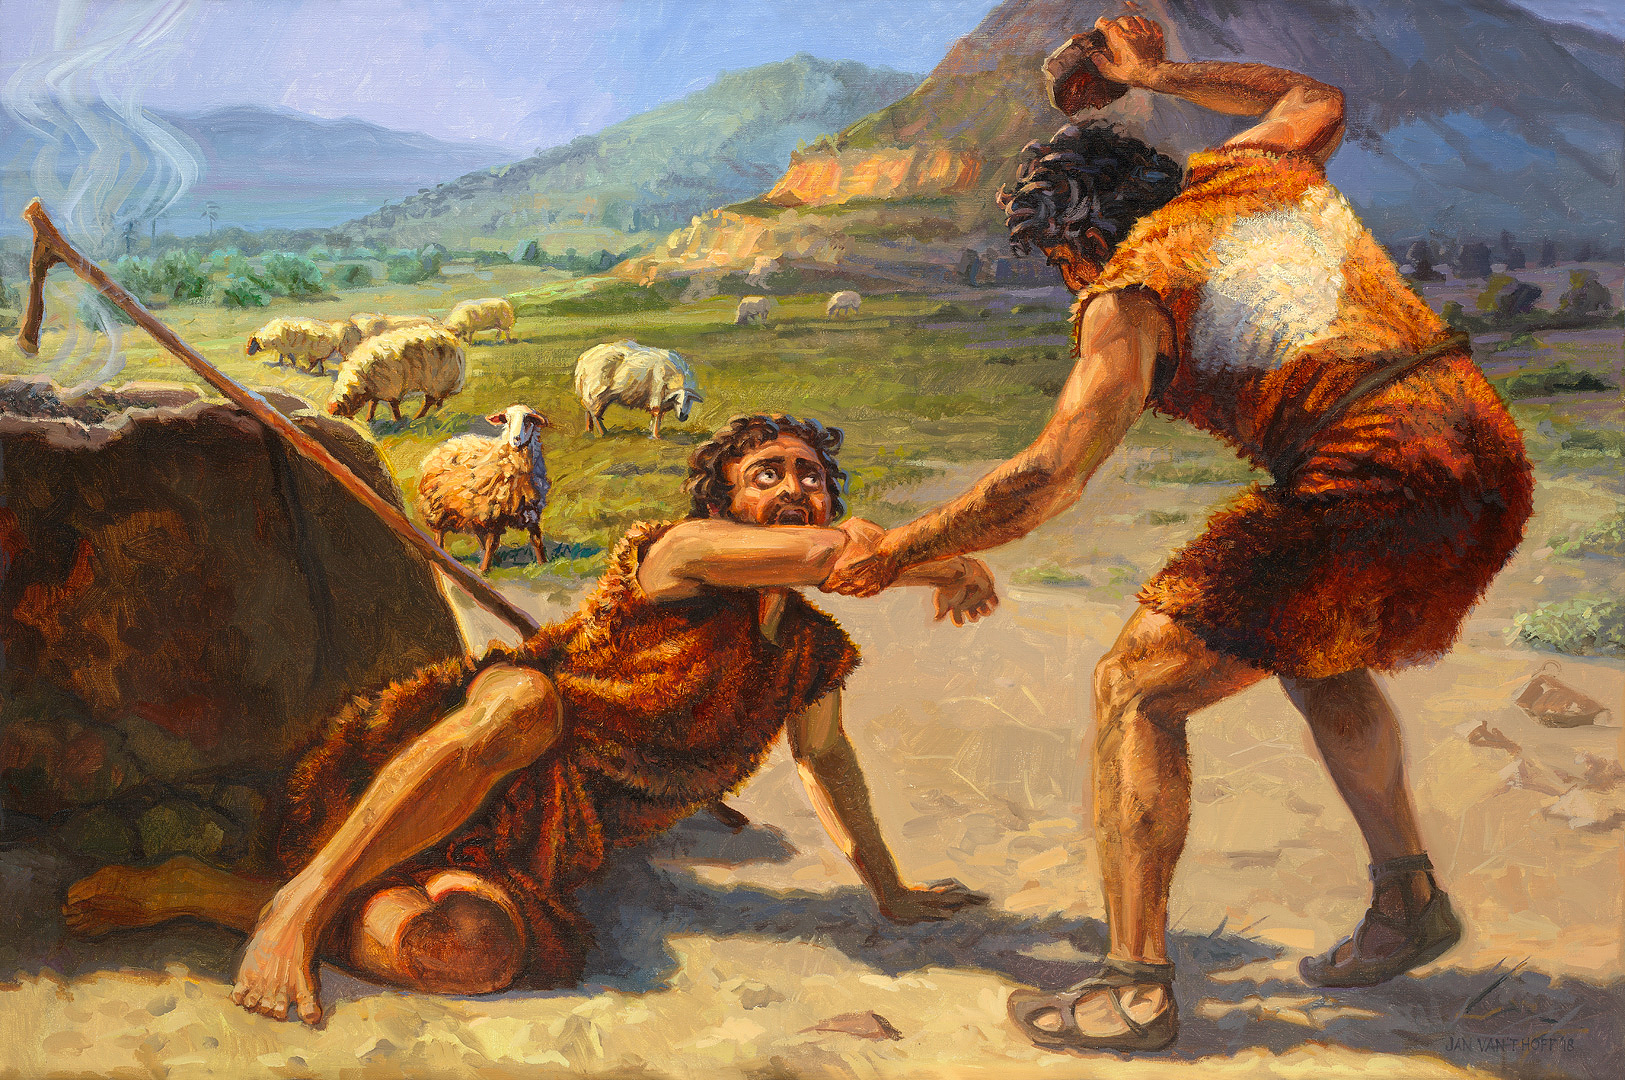 Kain zabija Abla